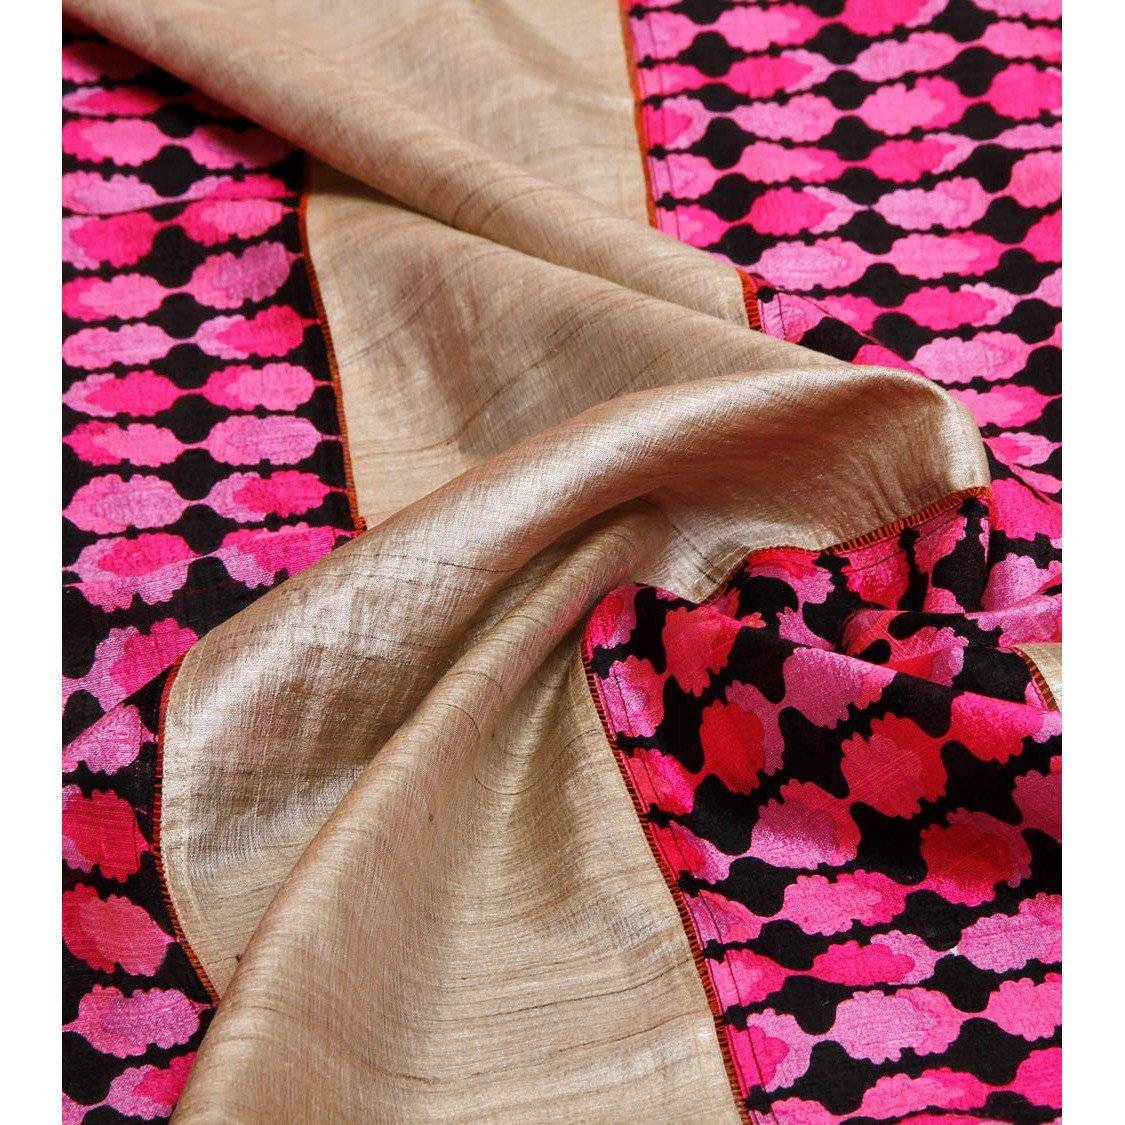 Grey & Pink Muga Silk Saree with Banarasi Silk Border